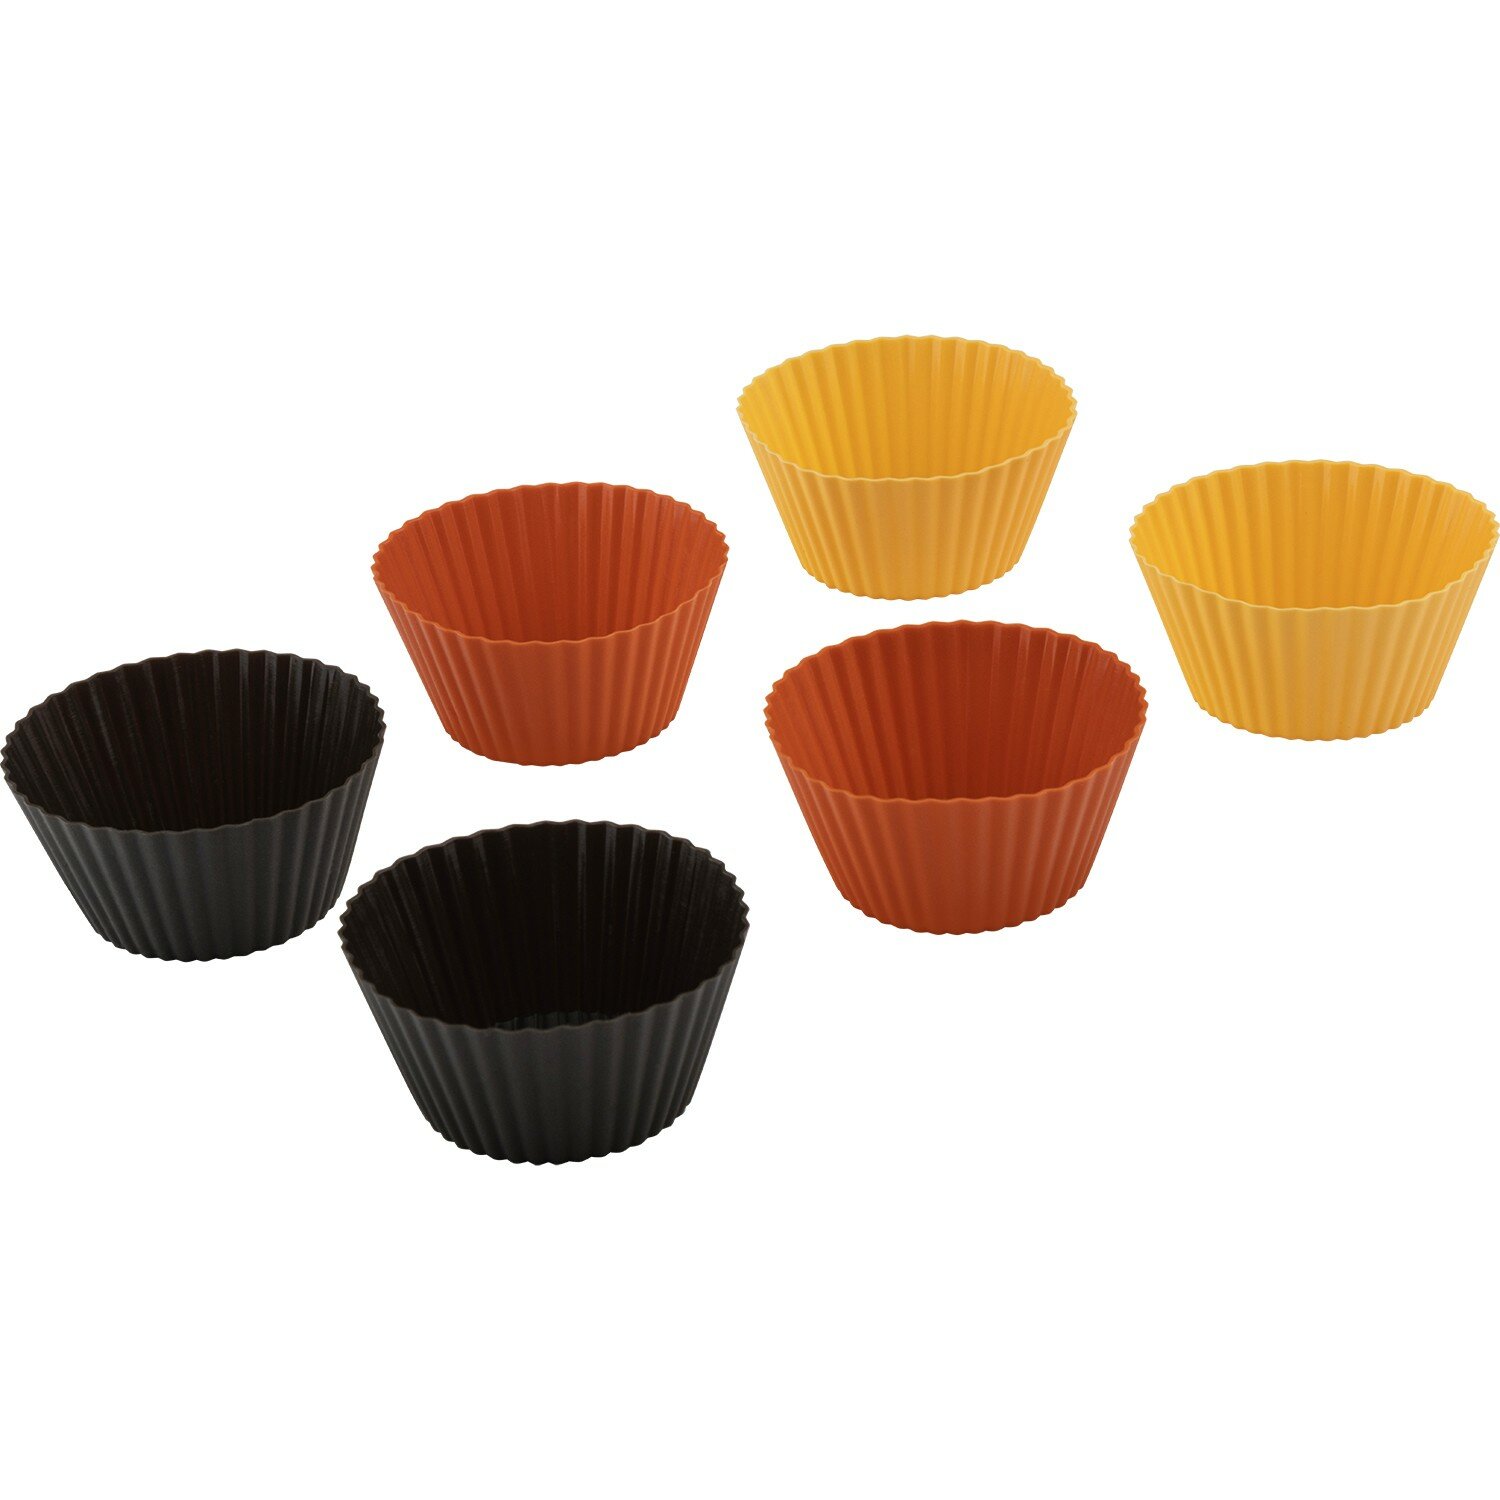 Набор форм силиконовых для выпечки кексов ROSEO 6 шт 7*4,5*3,5 см - 1 шт , 7 гр